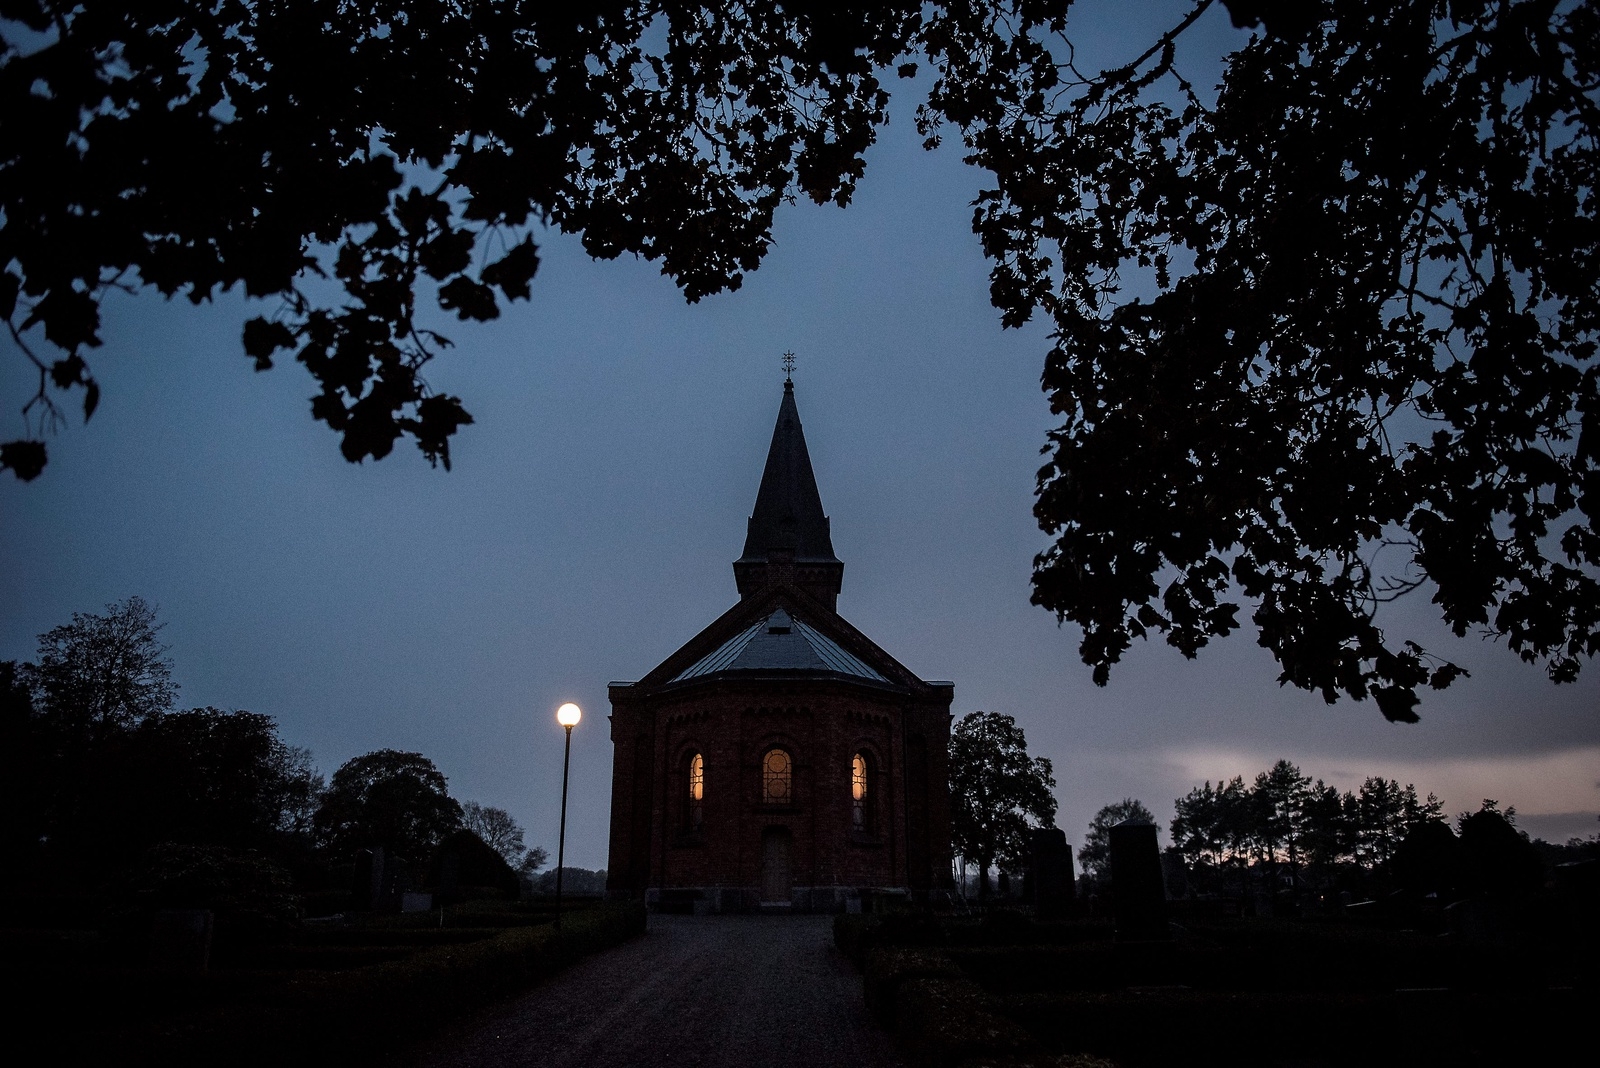 Ignaberga nya kyrka har fin akustik, menar Tommy Andersson.